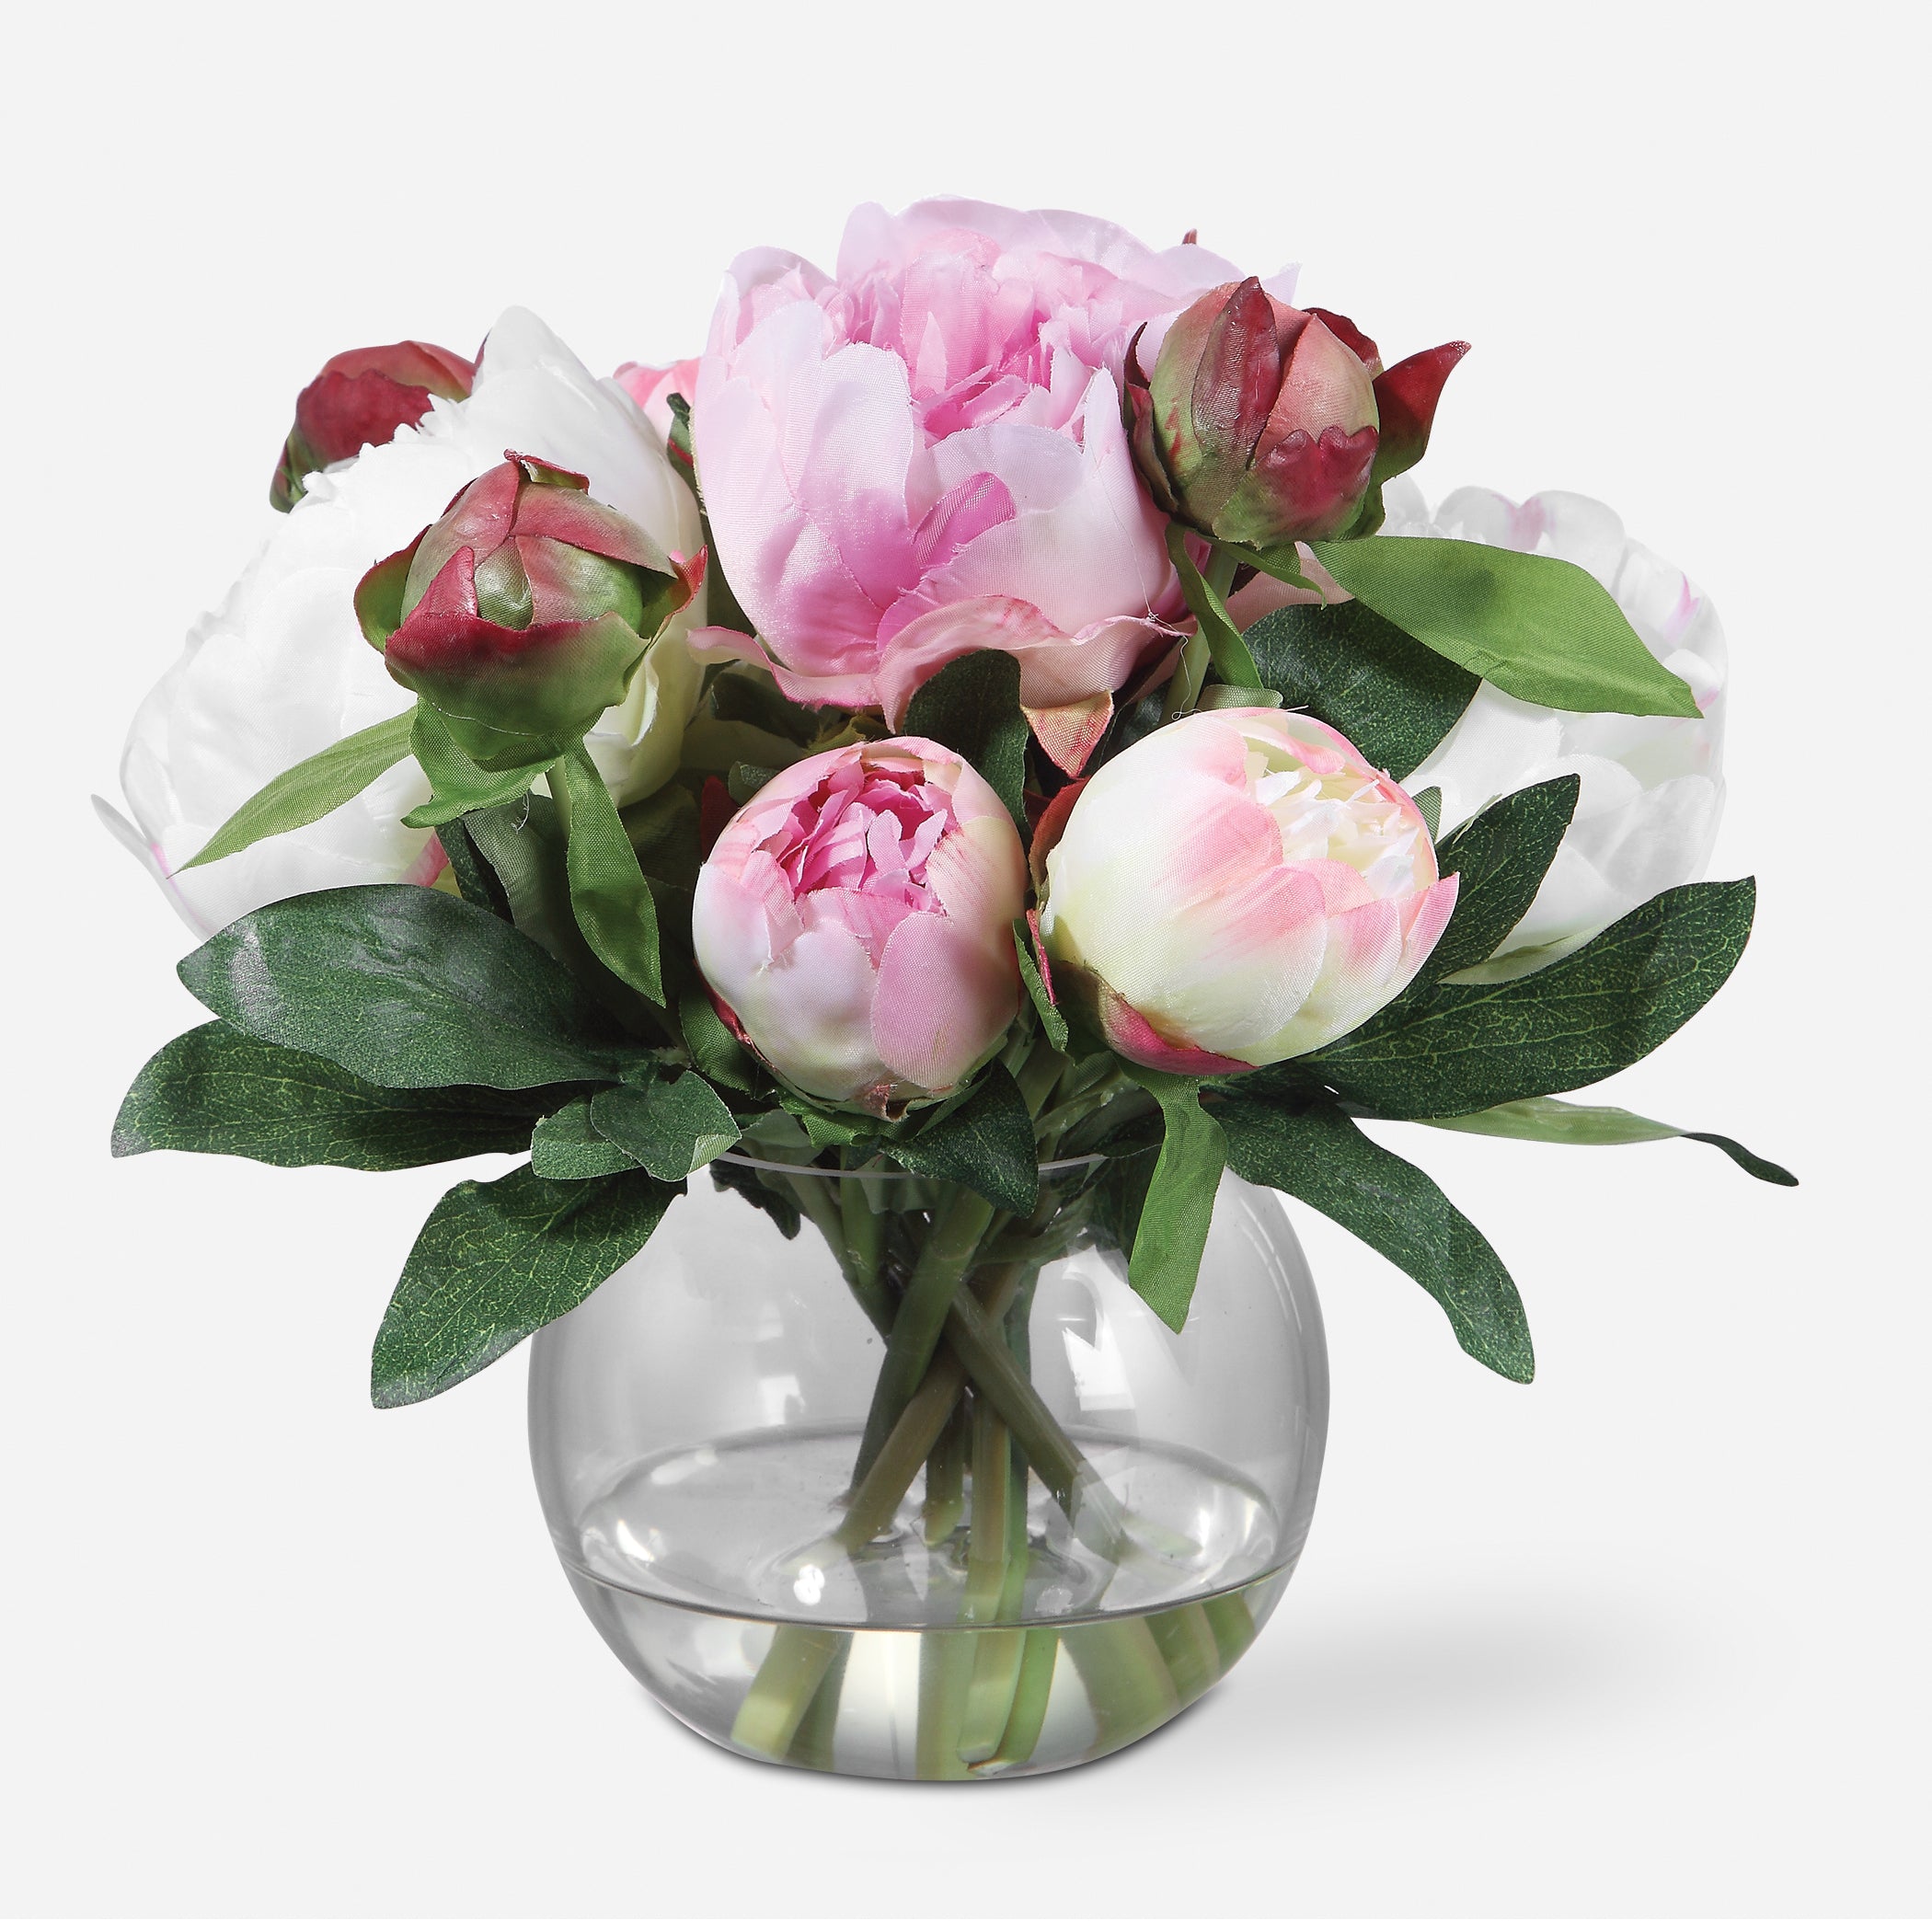 Uttermost Blaire Artificial Flowers / Centerpiece